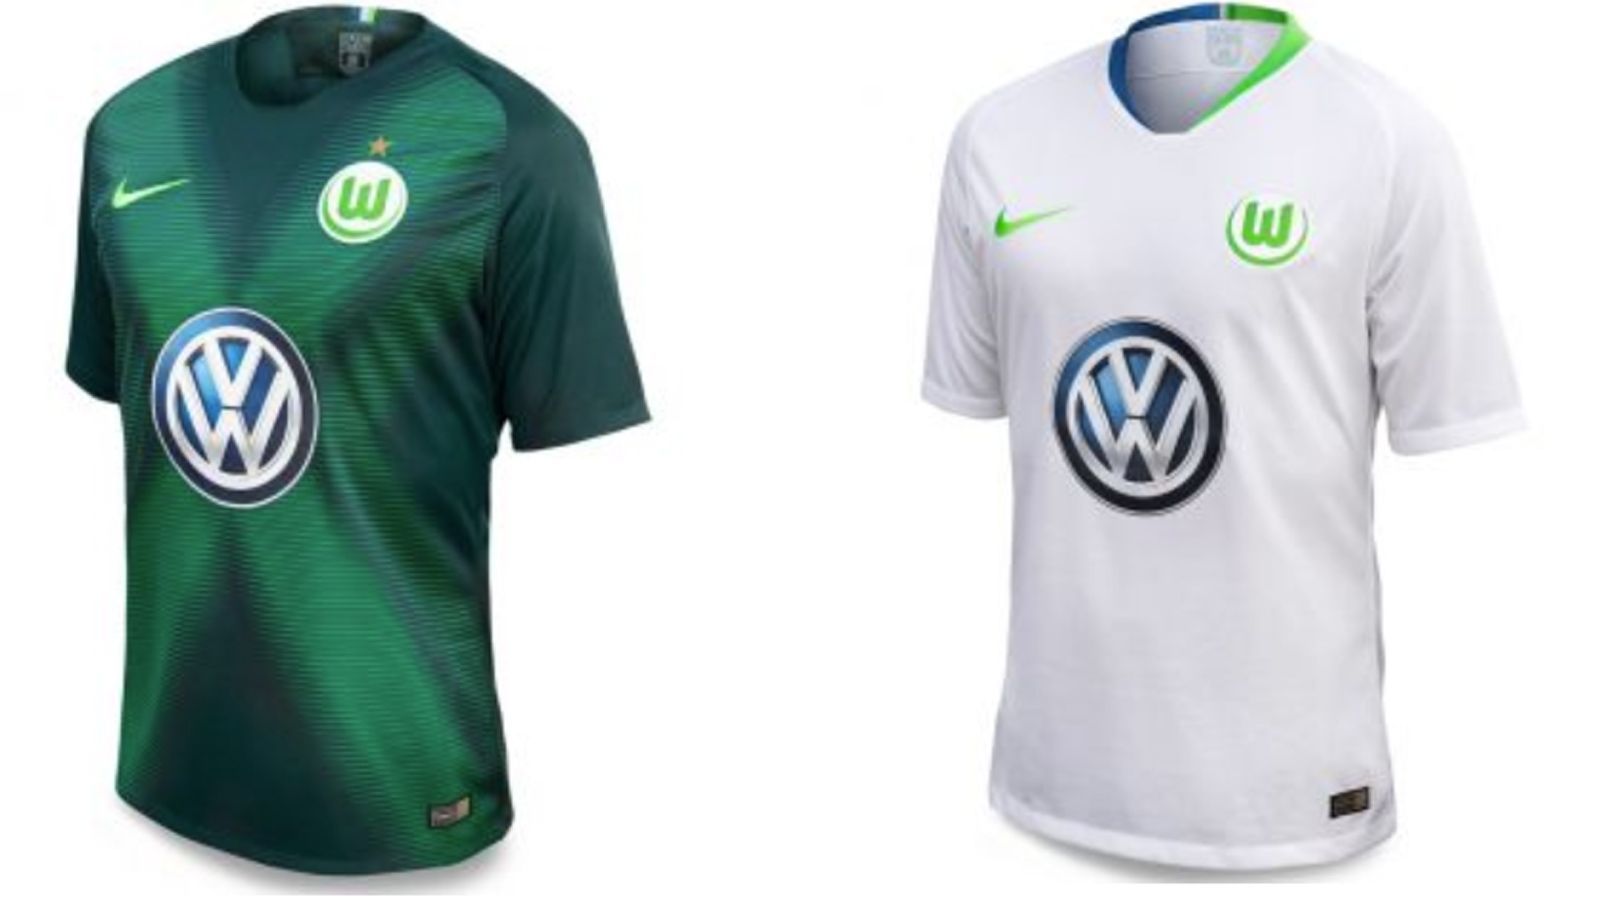 
                <strong>VfL Wolfsburg</strong><br>
                Ein Satz mit X? Die Wolfsburg-Fans hoffen, dass das trotz des X auf dem Heimtrikot nicht dazu kommt. Klassisch weiß ist das Auswärtstrikot.
              